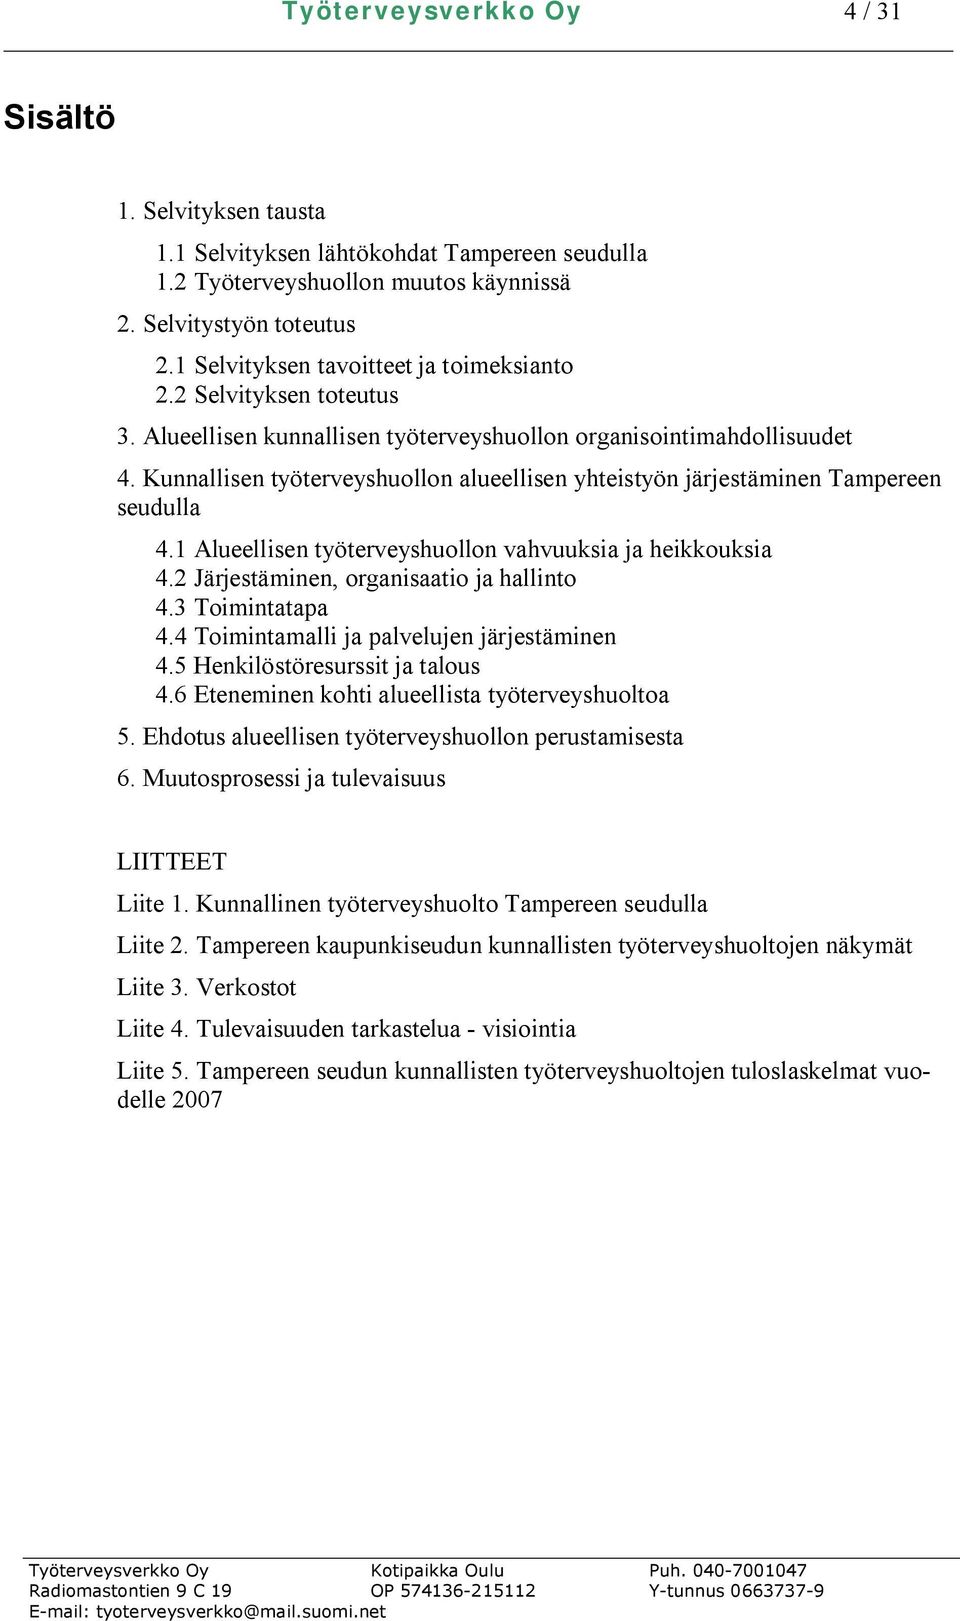 Kunnallisen työterveyshuollon alueellisen yhteistyön järjestäminen Tampereen seudulla 4.1 Alueellisen työterveyshuollon vahvuuksia ja heikkouksia 4.2 Järjestäminen, organisaatio ja hallinto 4.